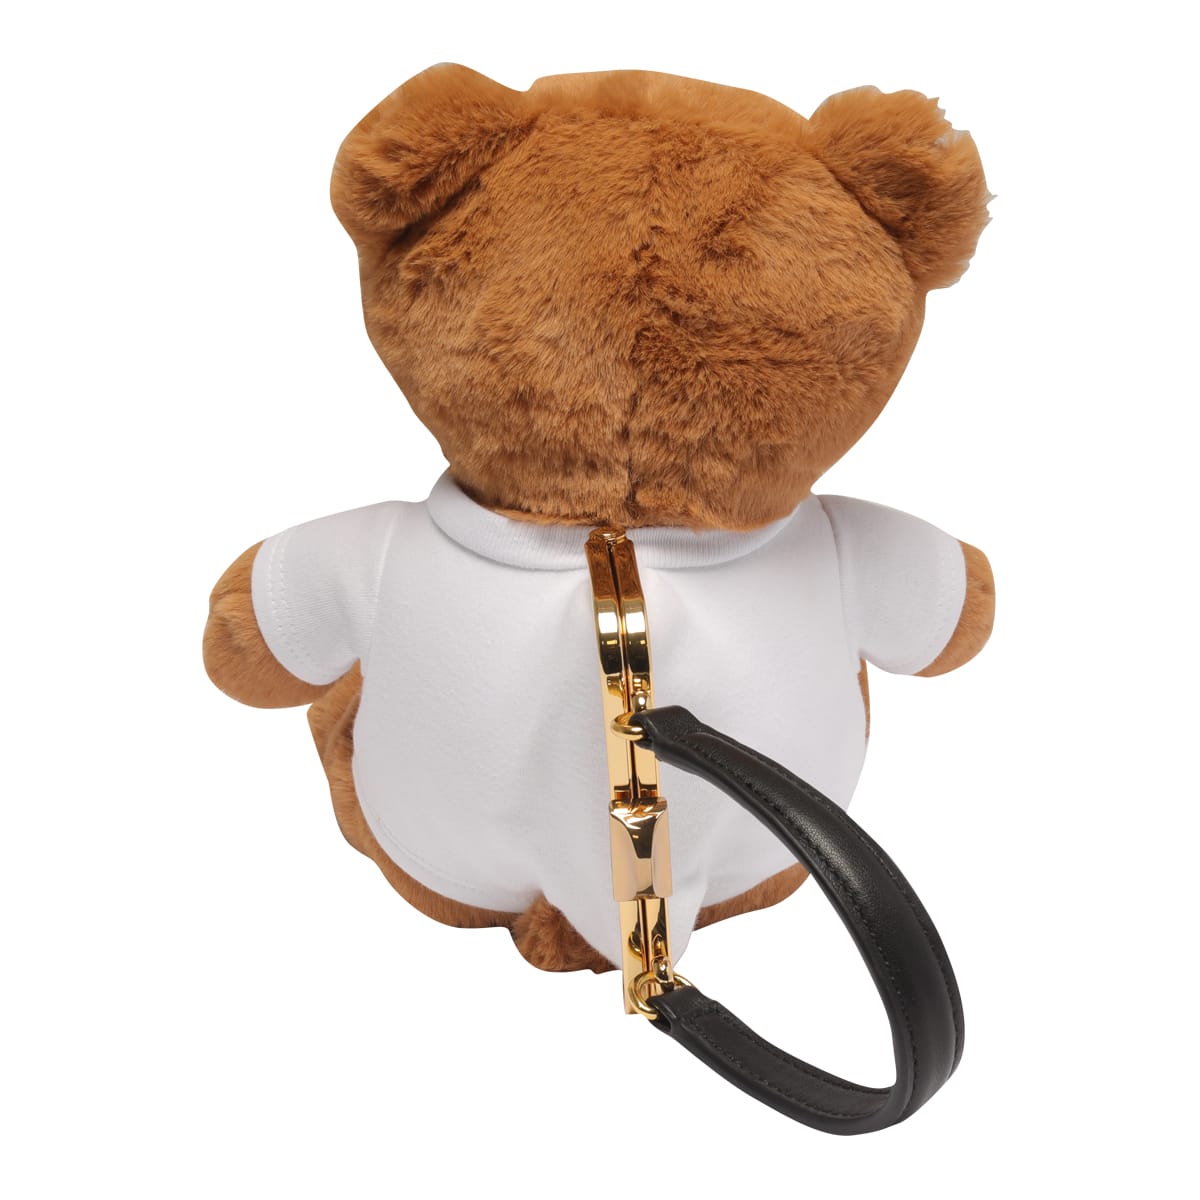 Shop Moschino Teddy Bear Peluche Handbag In Multicolor